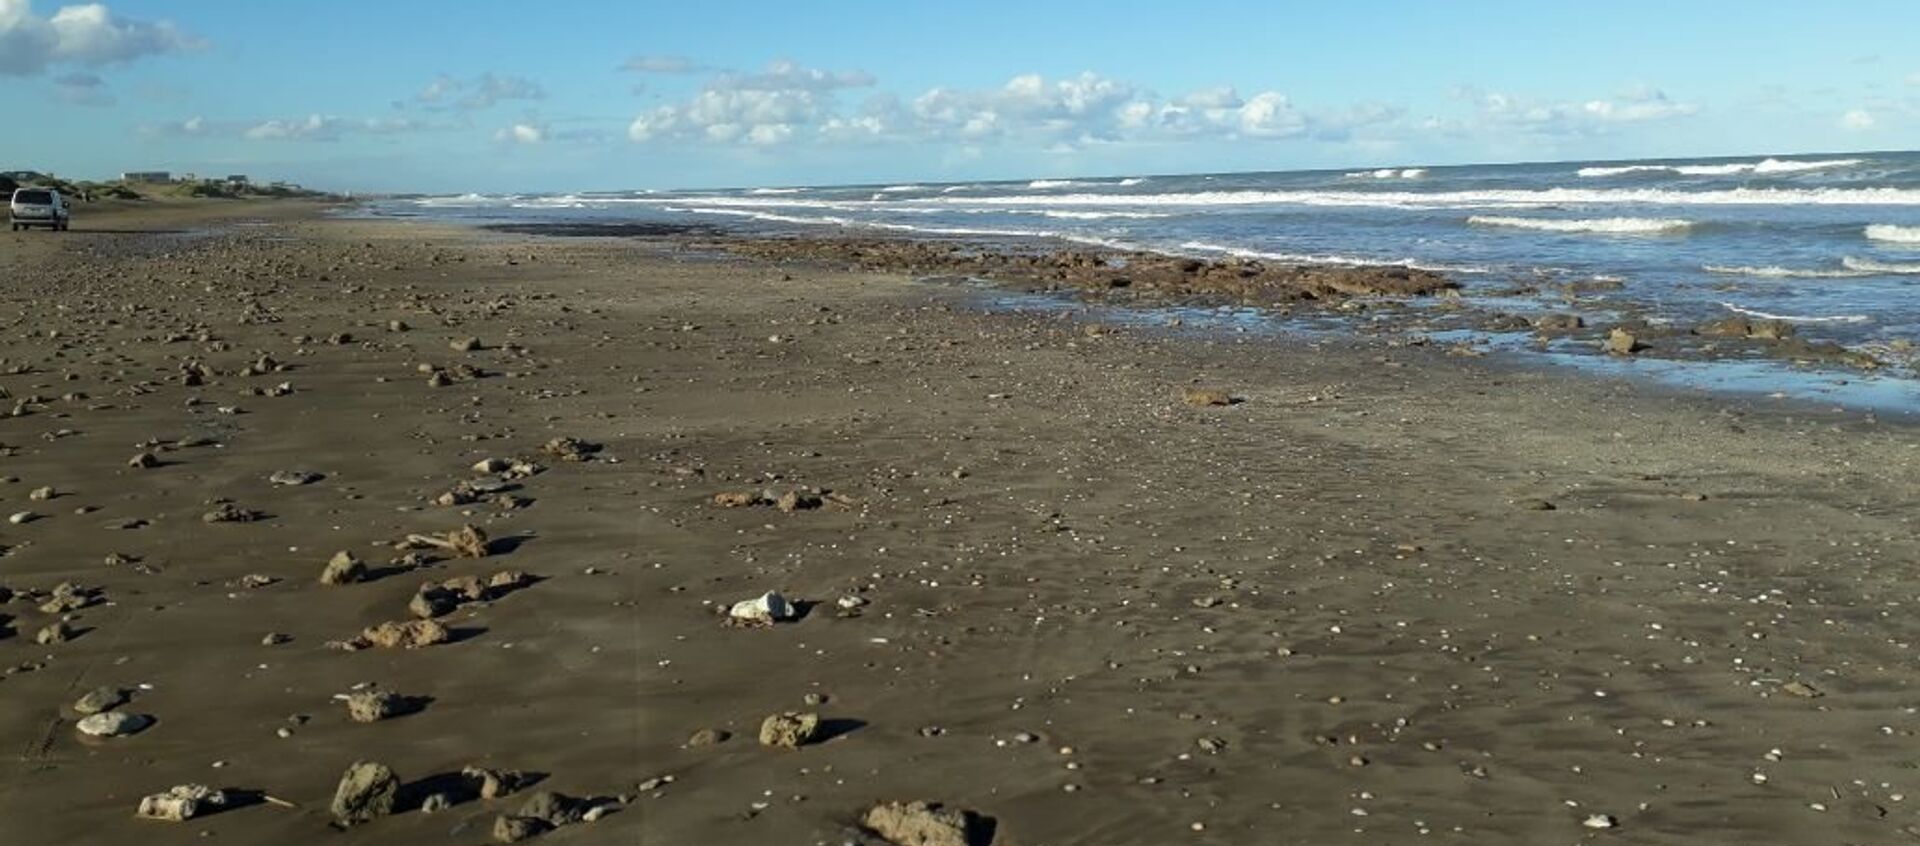 Playa argentina donde sucedió el hallazgo de un gliptodonte juvenil - Sputnik Mundo, 1920, 03.12.2020